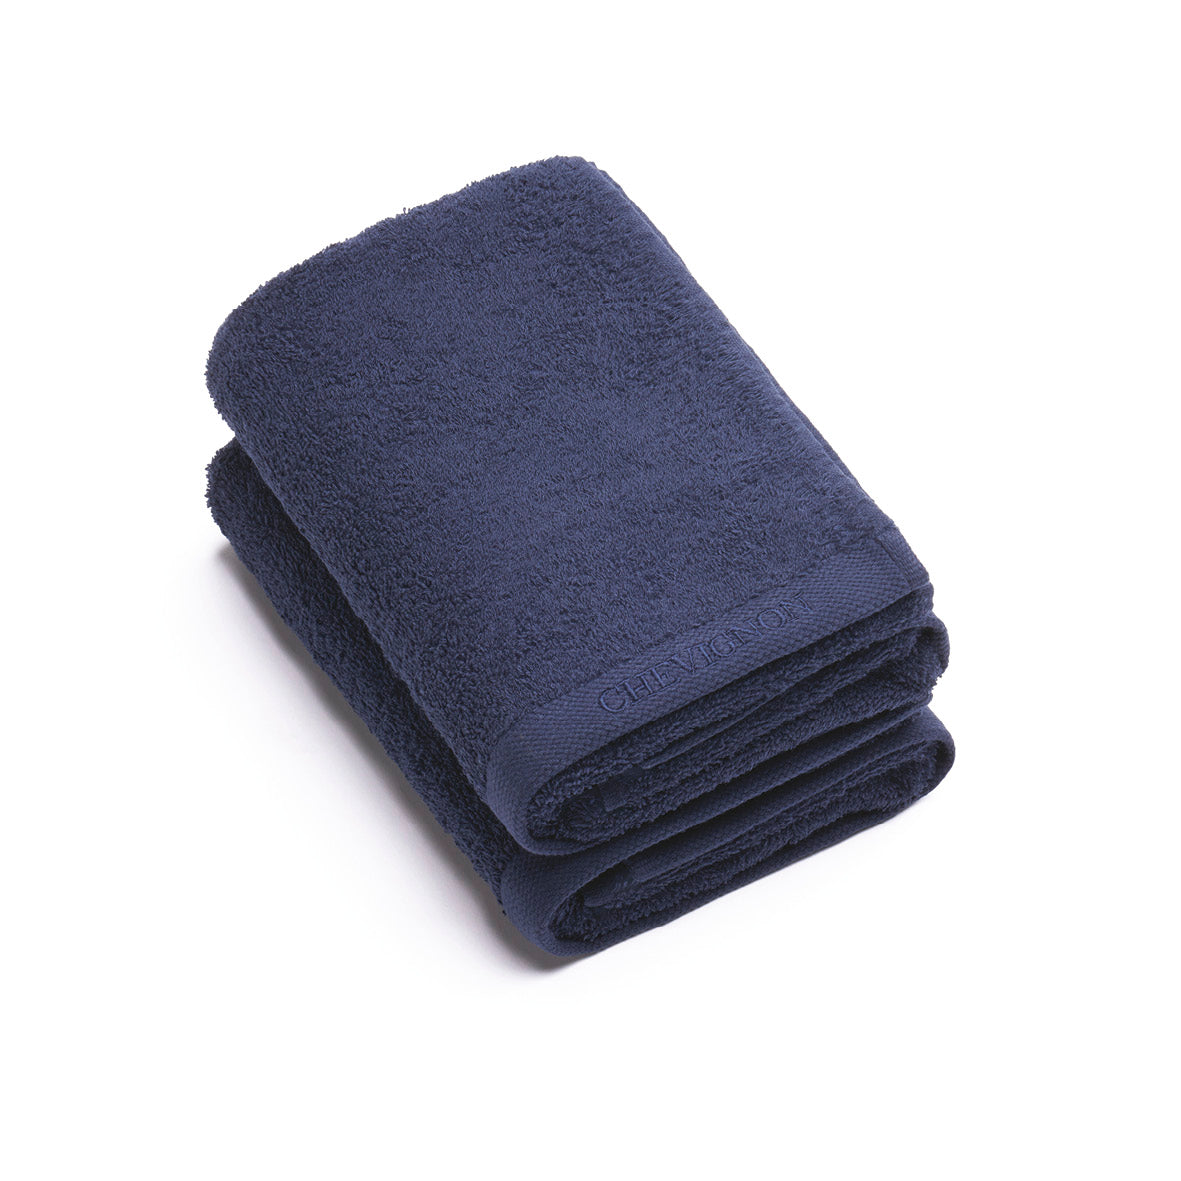 Set de 2 serviettes - Bleu marine - VipShopBoutic